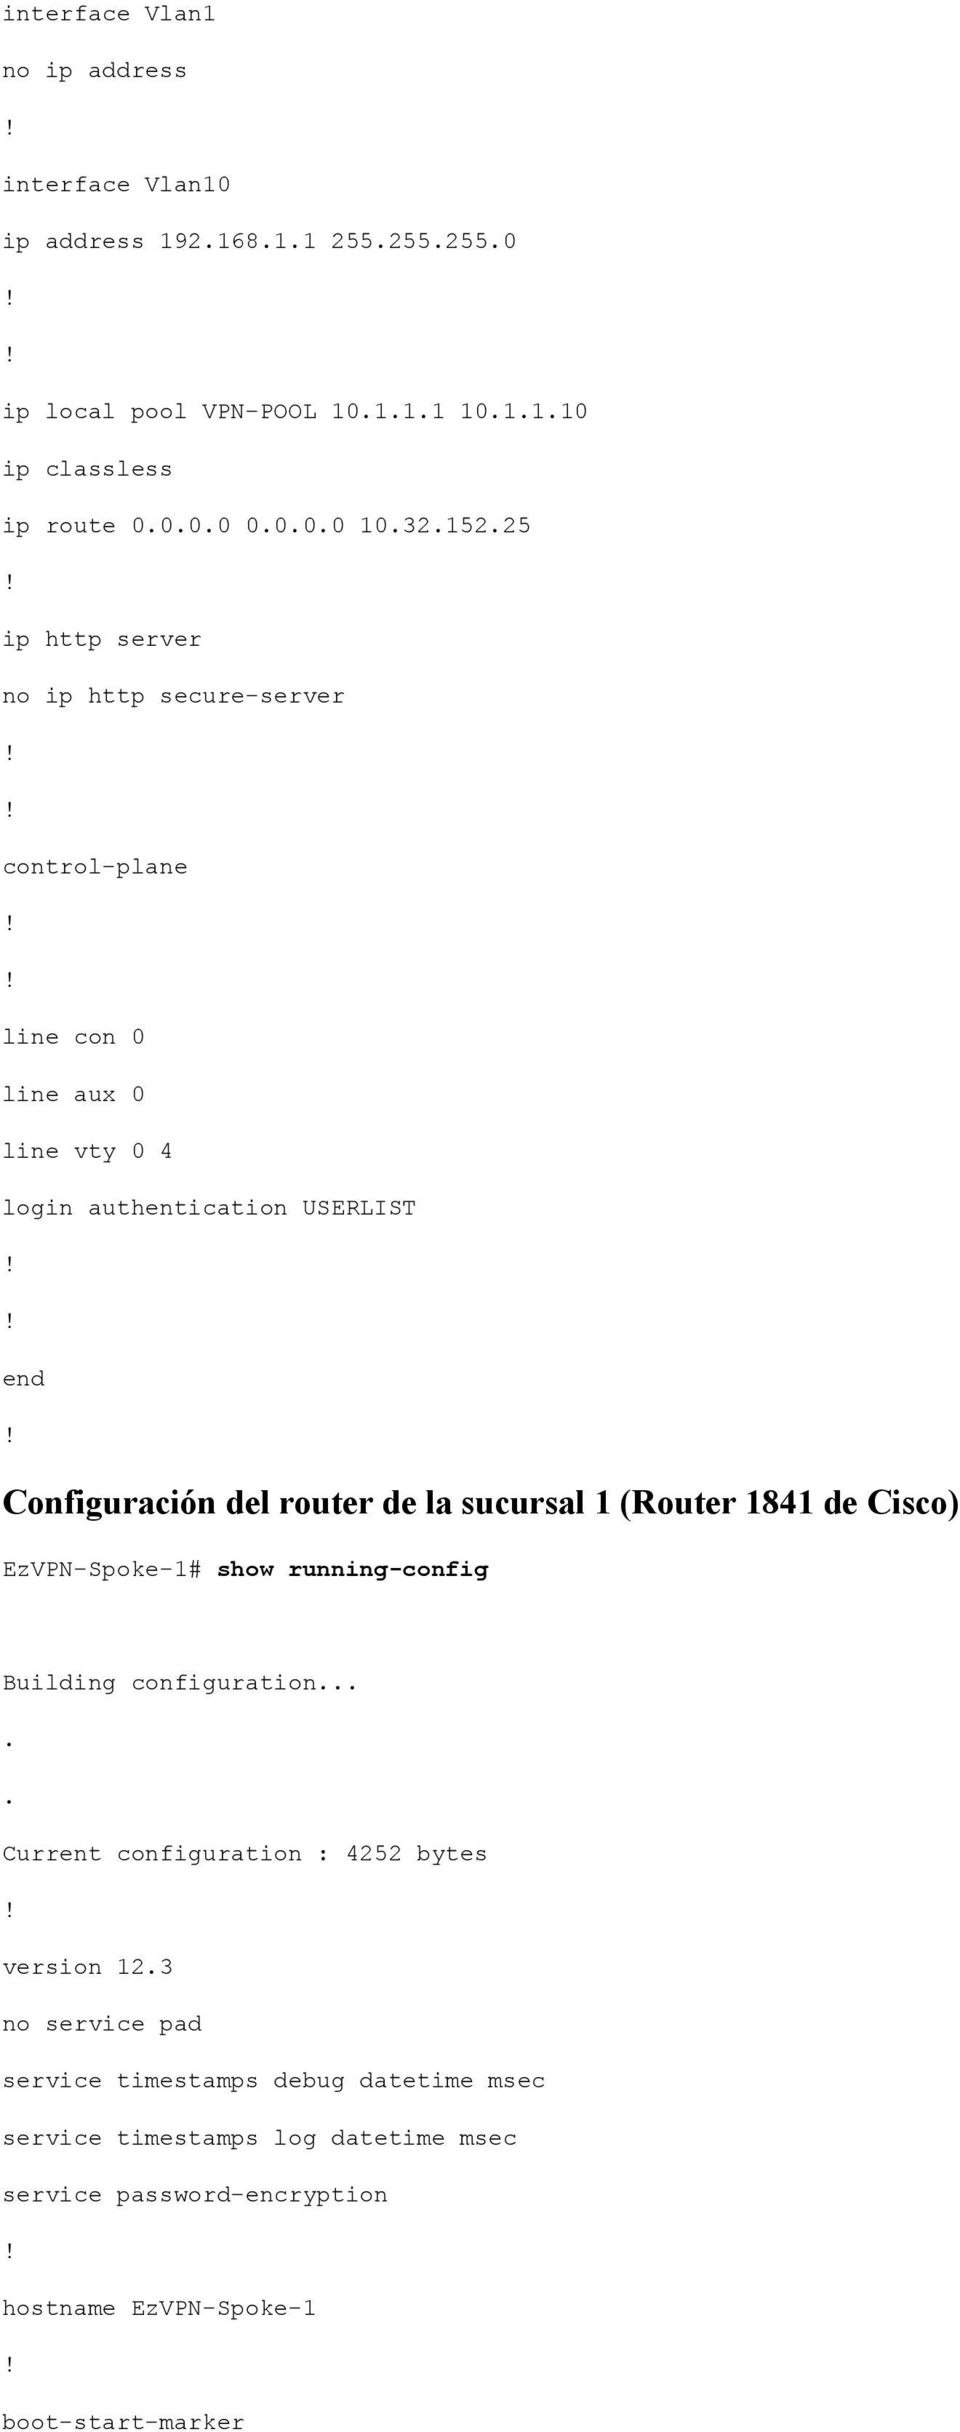 de la sucursal 1 (Router 1841 de Cisco) EzVPN-Spoke-1# show running-config Building configuration..... Current configuration : 4252 bytes version 12.